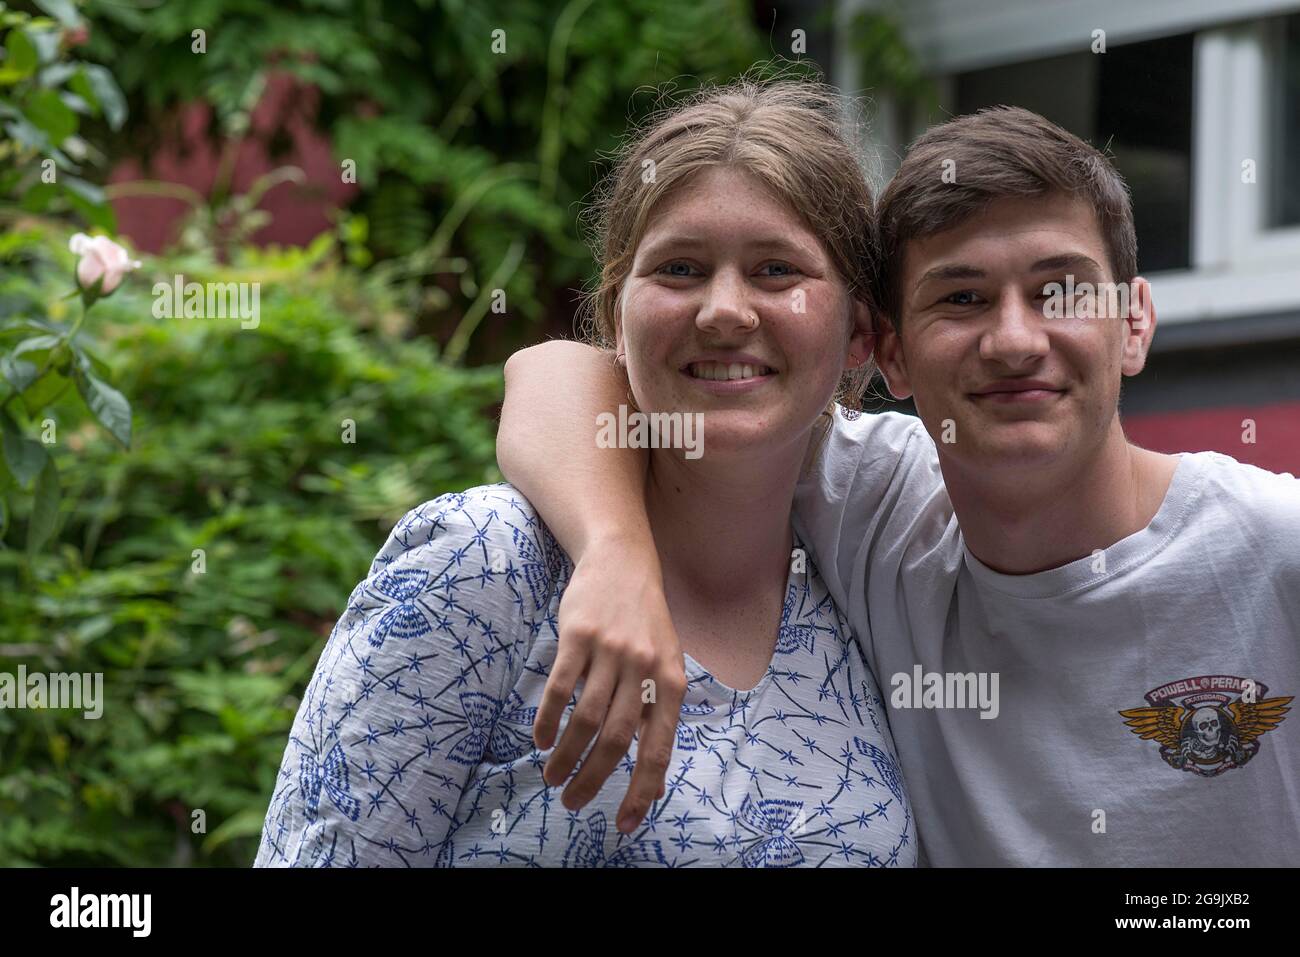 Portrait d'un frère et d'une sœur, Allemagne Banque D'Images